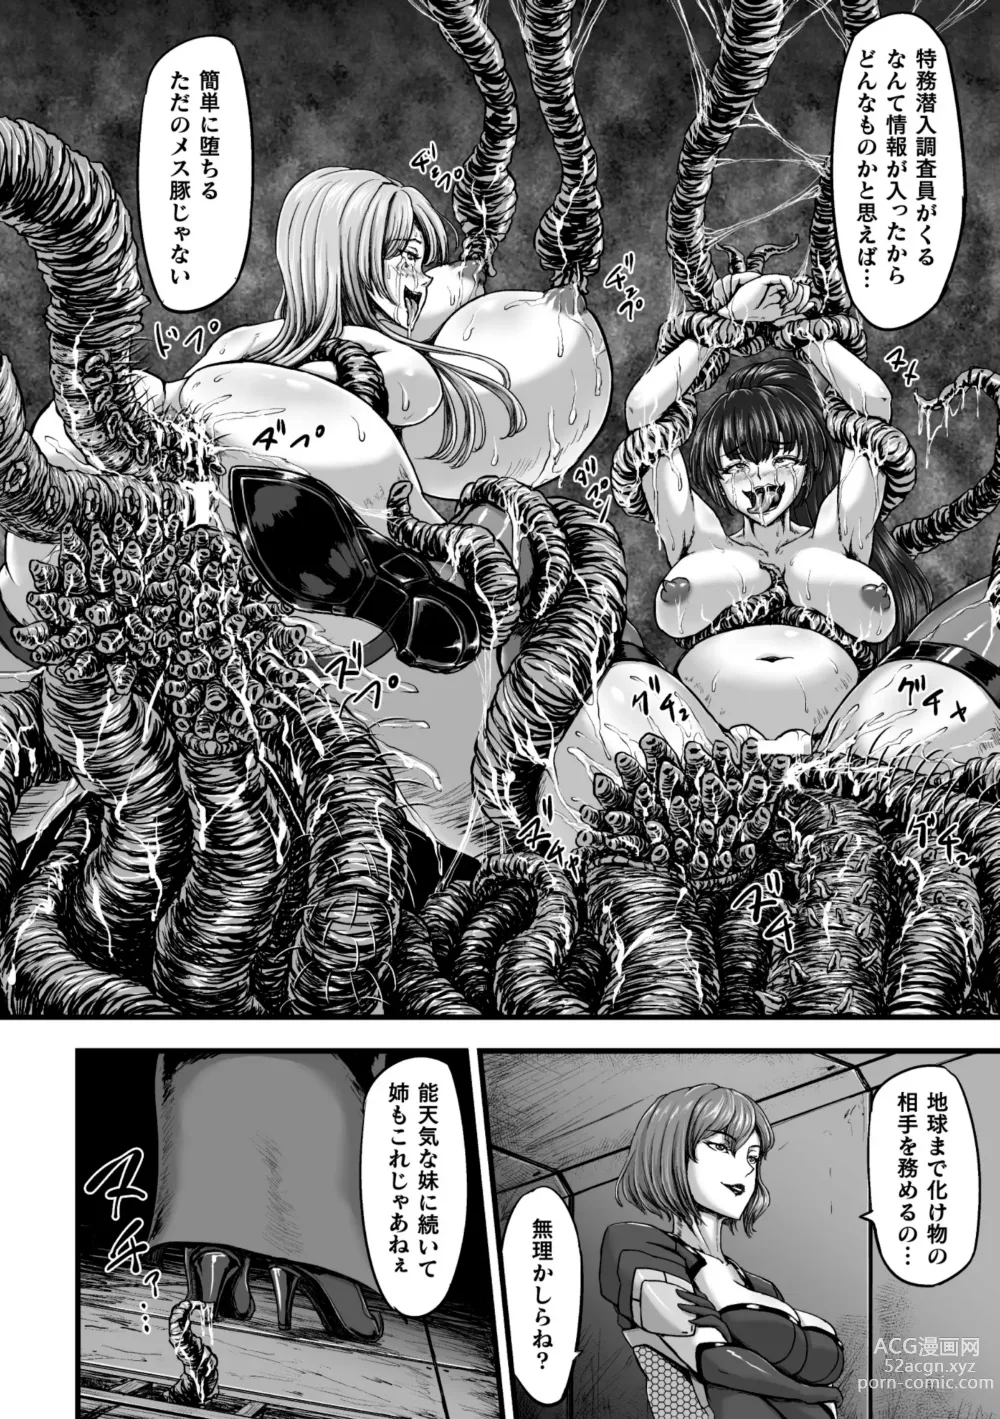 Page 6 of manga Kangoku Tentacle Battleship Episode 3